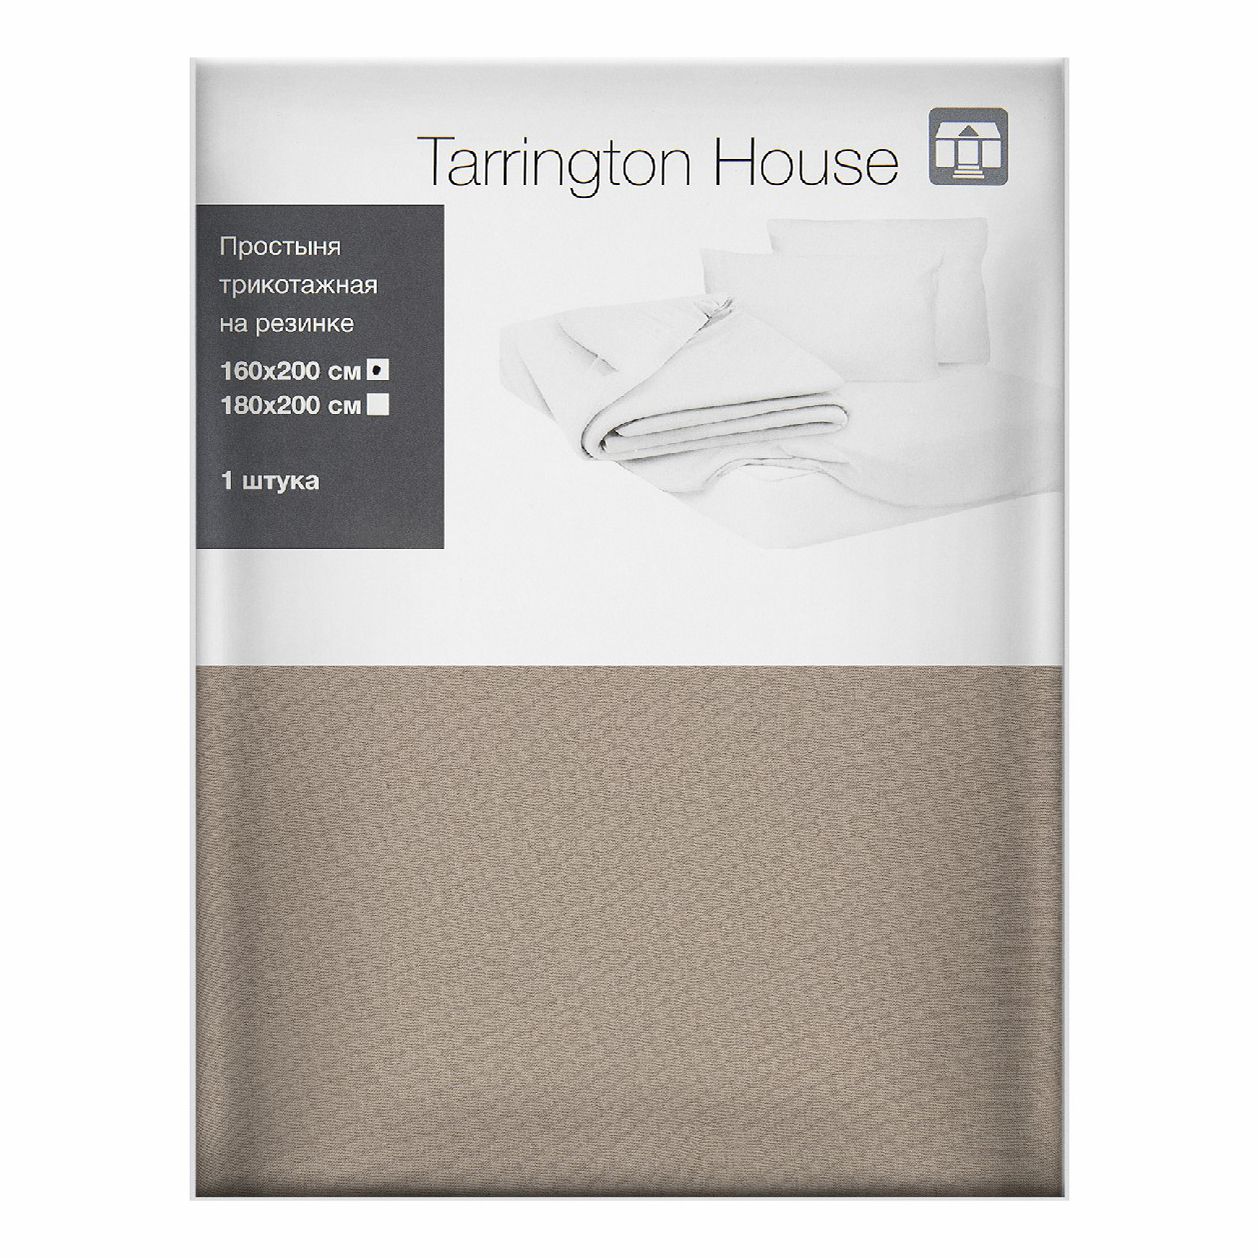 Простыня Tarrington House полутораспальная текстиль 160 x 200 см латте